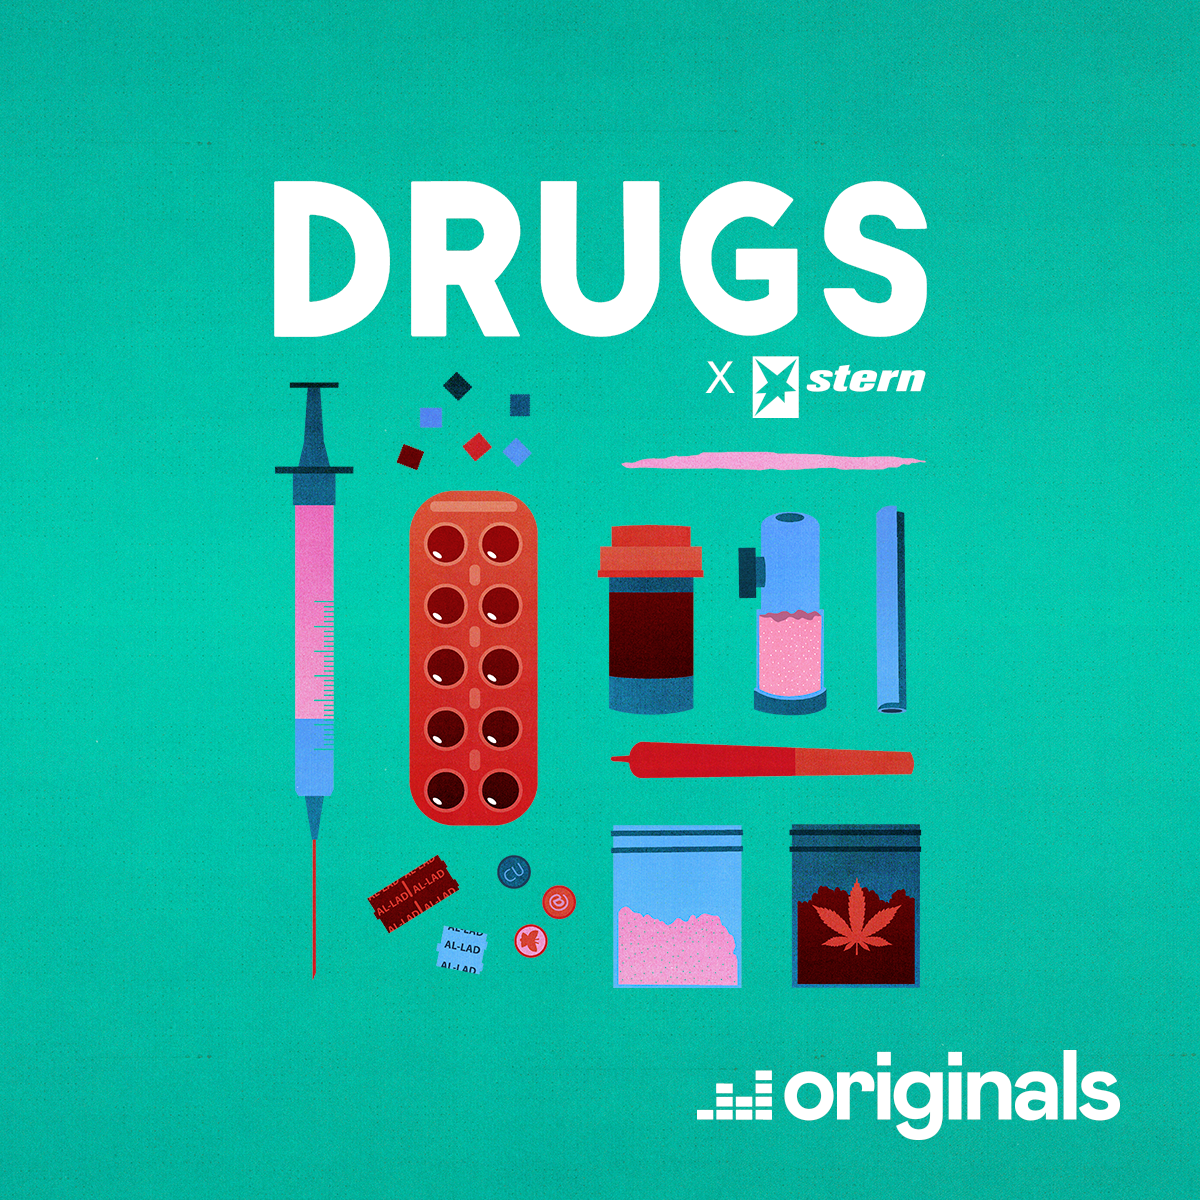 Heroin - Der Endgegner unter den Drogen